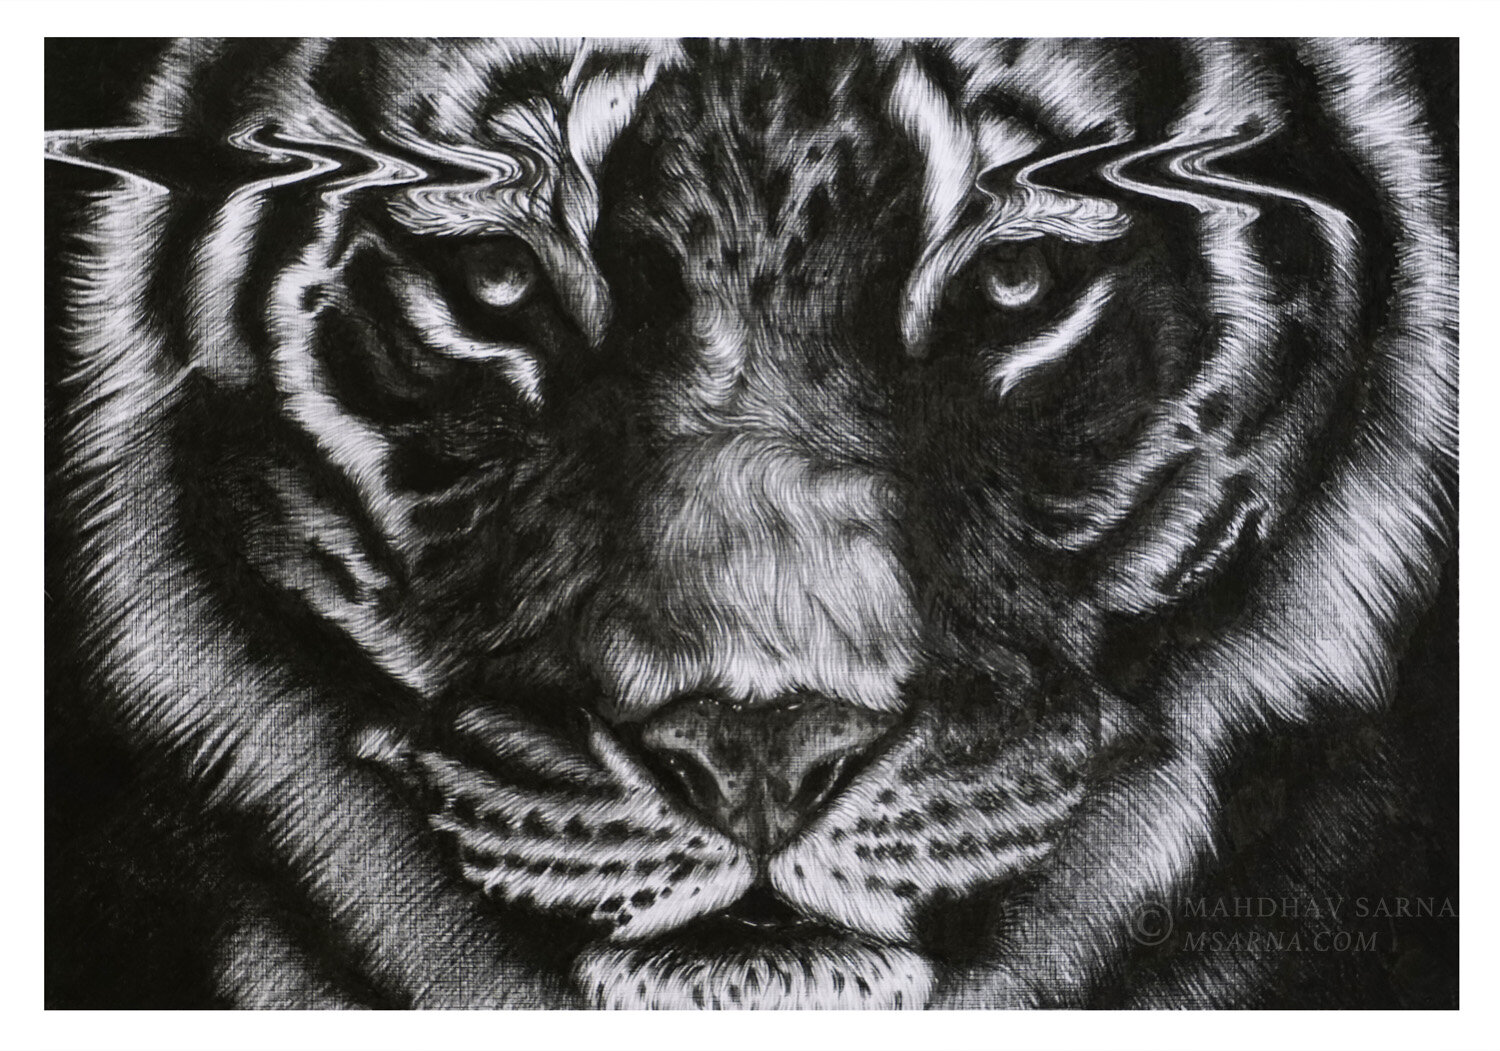 siberian tiger pencil drawing egst wildlife art mahdhav sarna.jpg